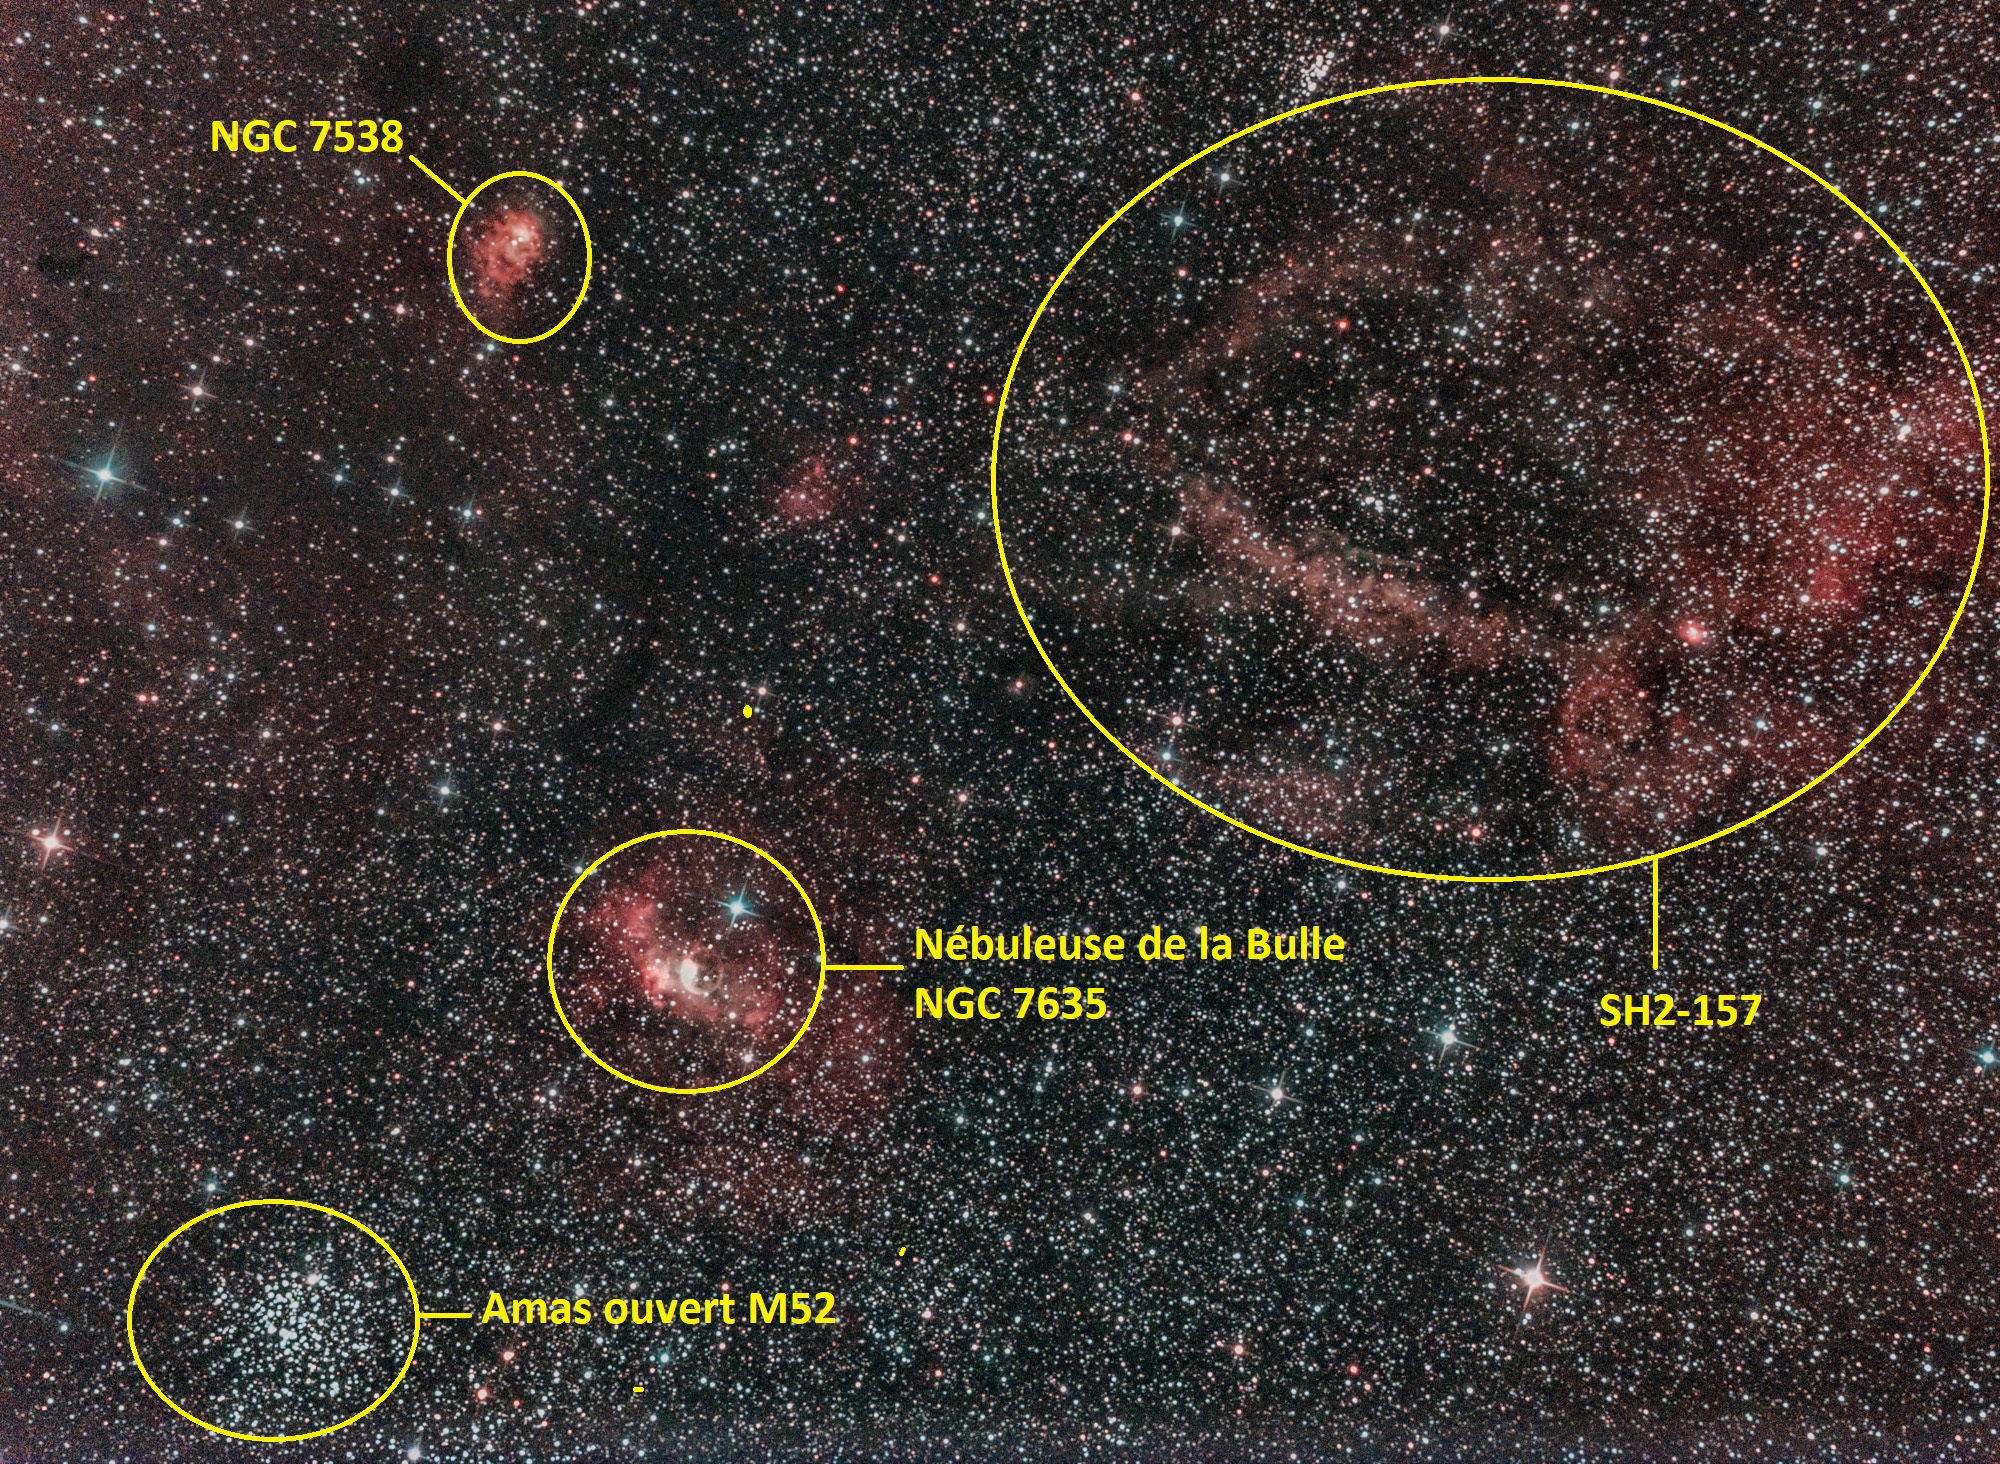 5fc380a5a2ede_NGC7635-Sh2-157(1sur1)lgende.jpg.7ffff2210c0132394e4ebaba9c481443.jpg